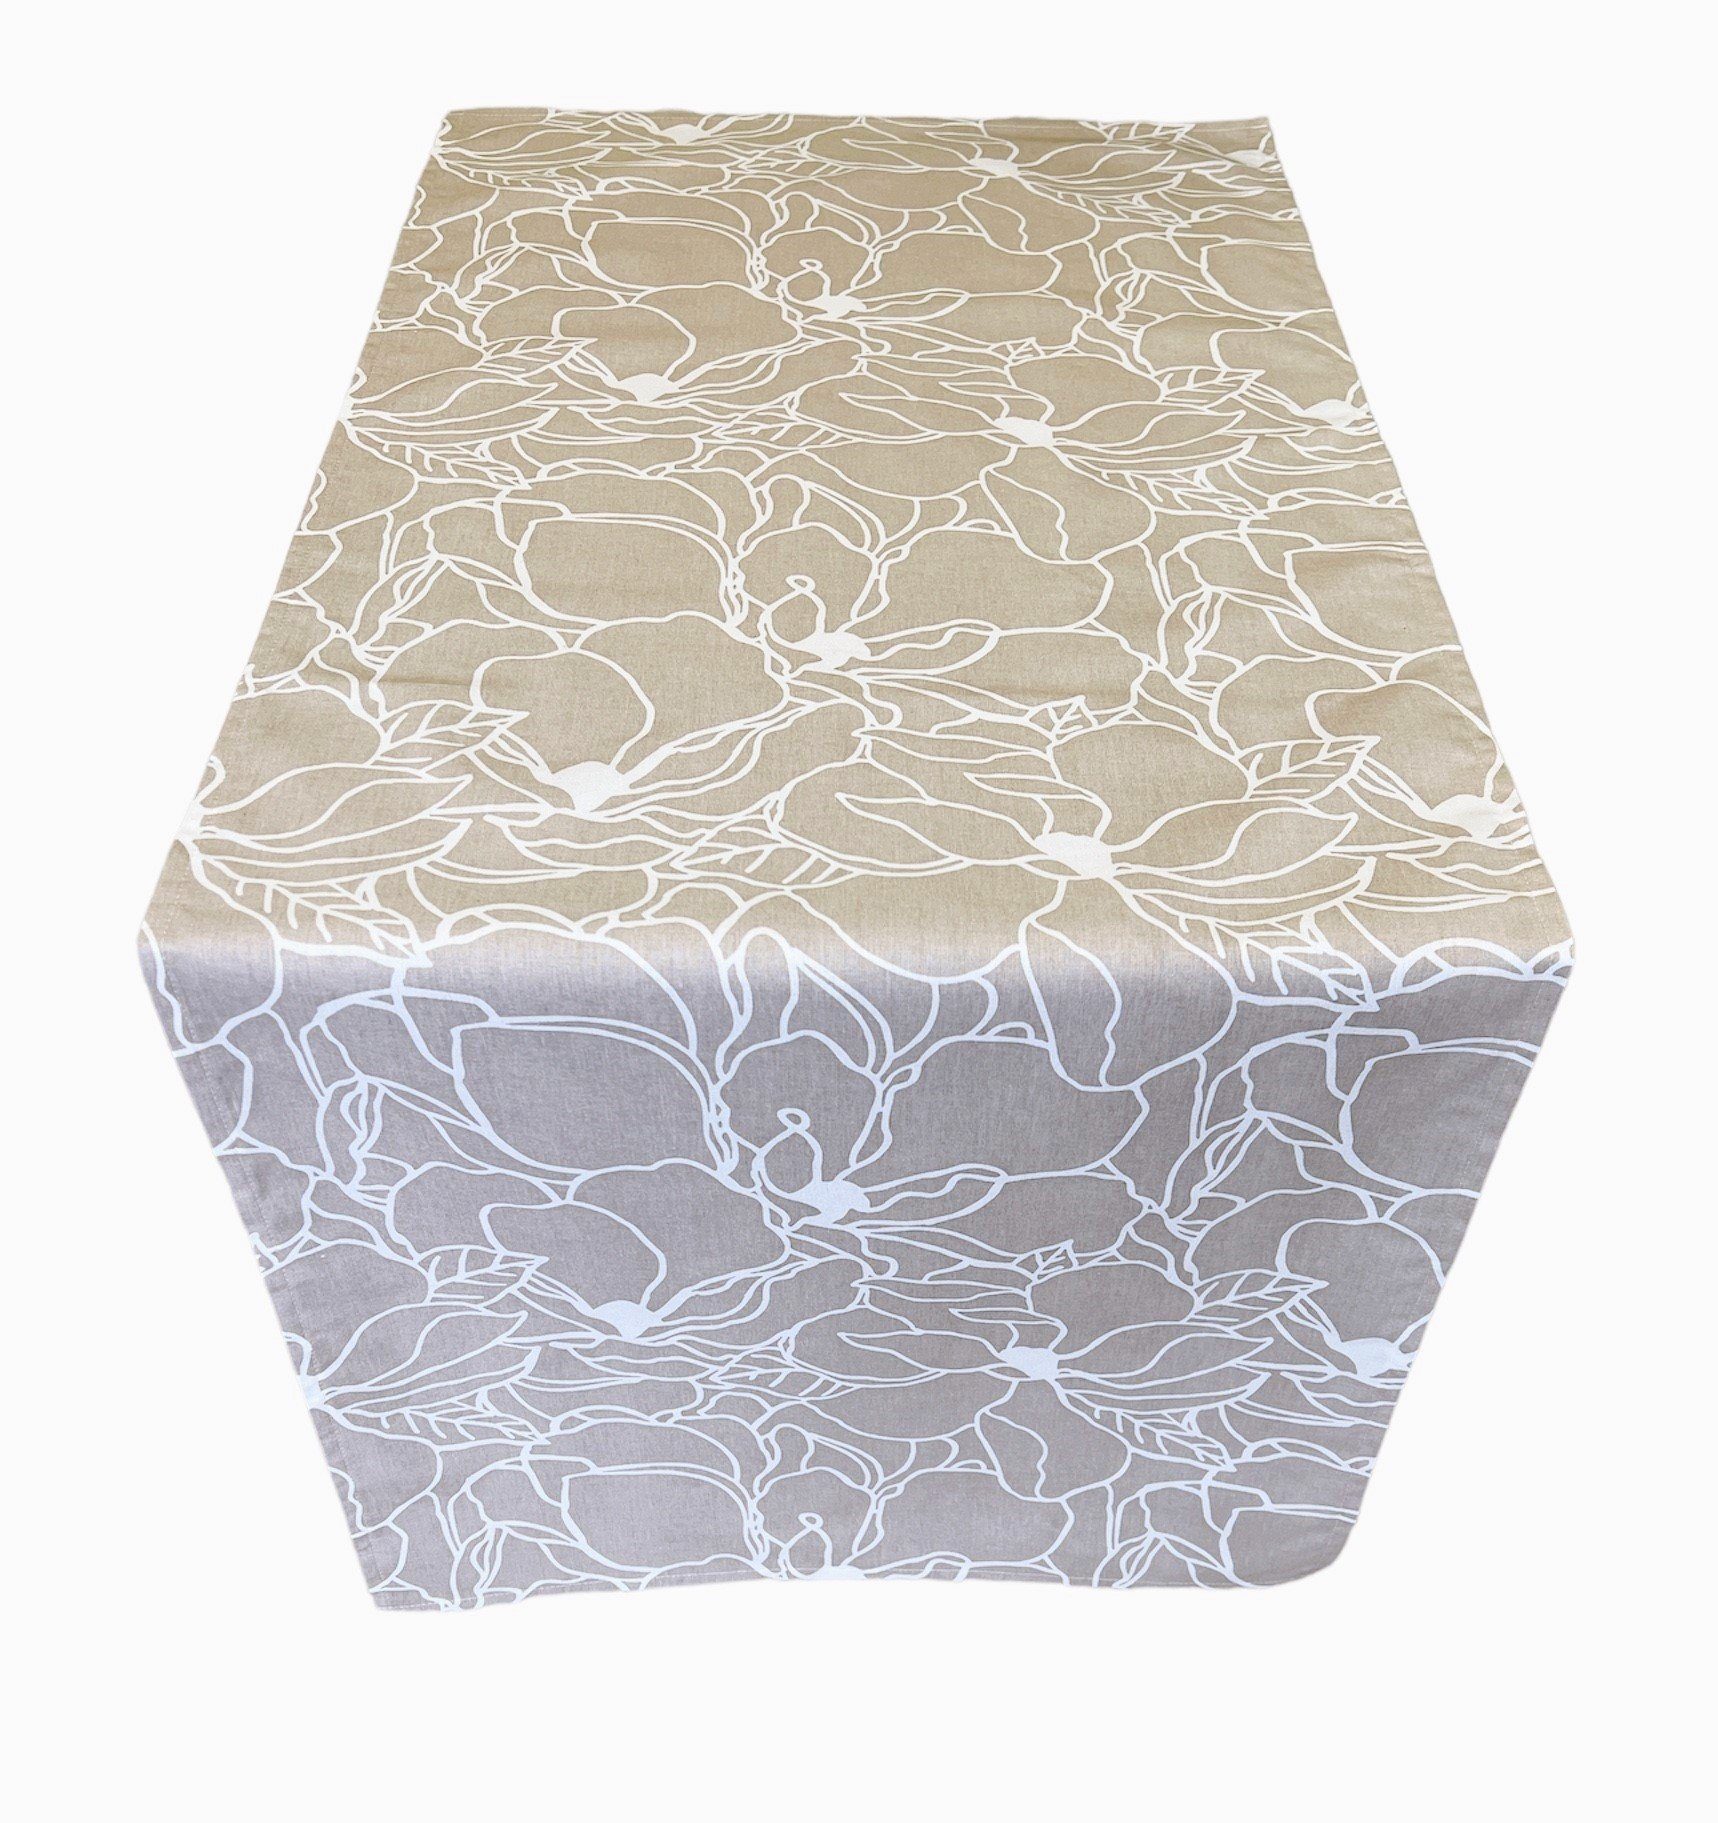 RoKo-Textilien Tischläufer Tischläufer Tischdecke 100% Baumwolle gedeckter Tisch in 18 Maßen, bedruckt, geblümt